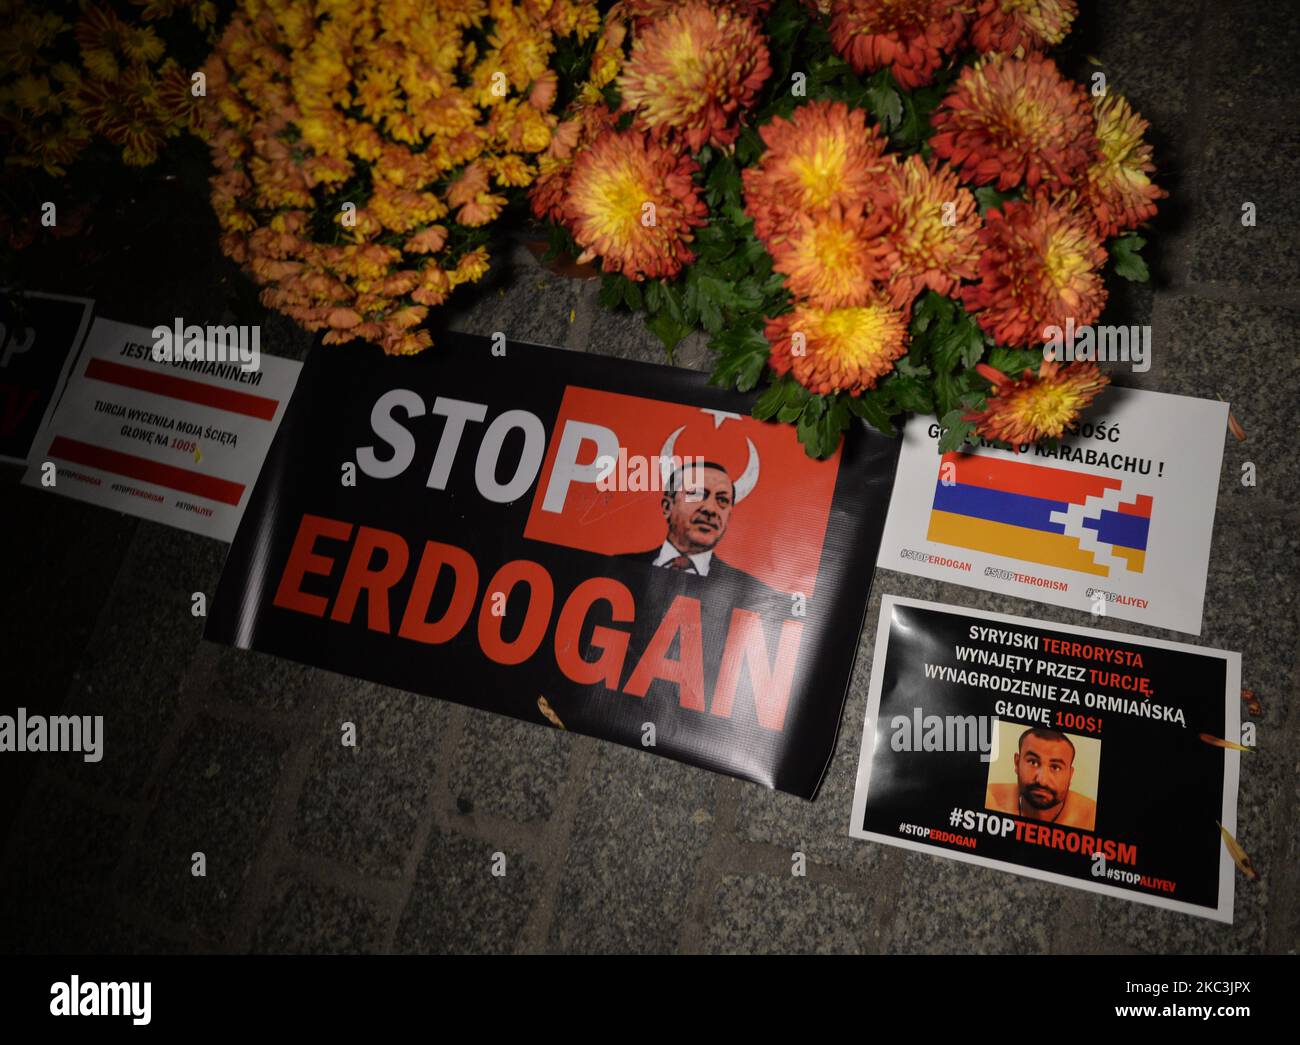 Des bougies, des fleurs et un message « Stop Erdogan » sont partis sur la place du marché de Cracovie après une manifestation. Des membres de la diaspora arménienne se sont réunis dans le centre de Cracovie au cours d'une manifestation pacifique pour protester contre les affrontements armés entre les parties azerbaïdjanaise et arménienne dans la région contestée du Haut-Karabakh et pour demander de l'aide pour mettre fin au terrorisme et à la violence azerbaïdjanaise. Samedi, 7 novembre 2020, à Cracovie, en Pologne. (Photo par Artur Widak/NurPhoto) Banque D'Images